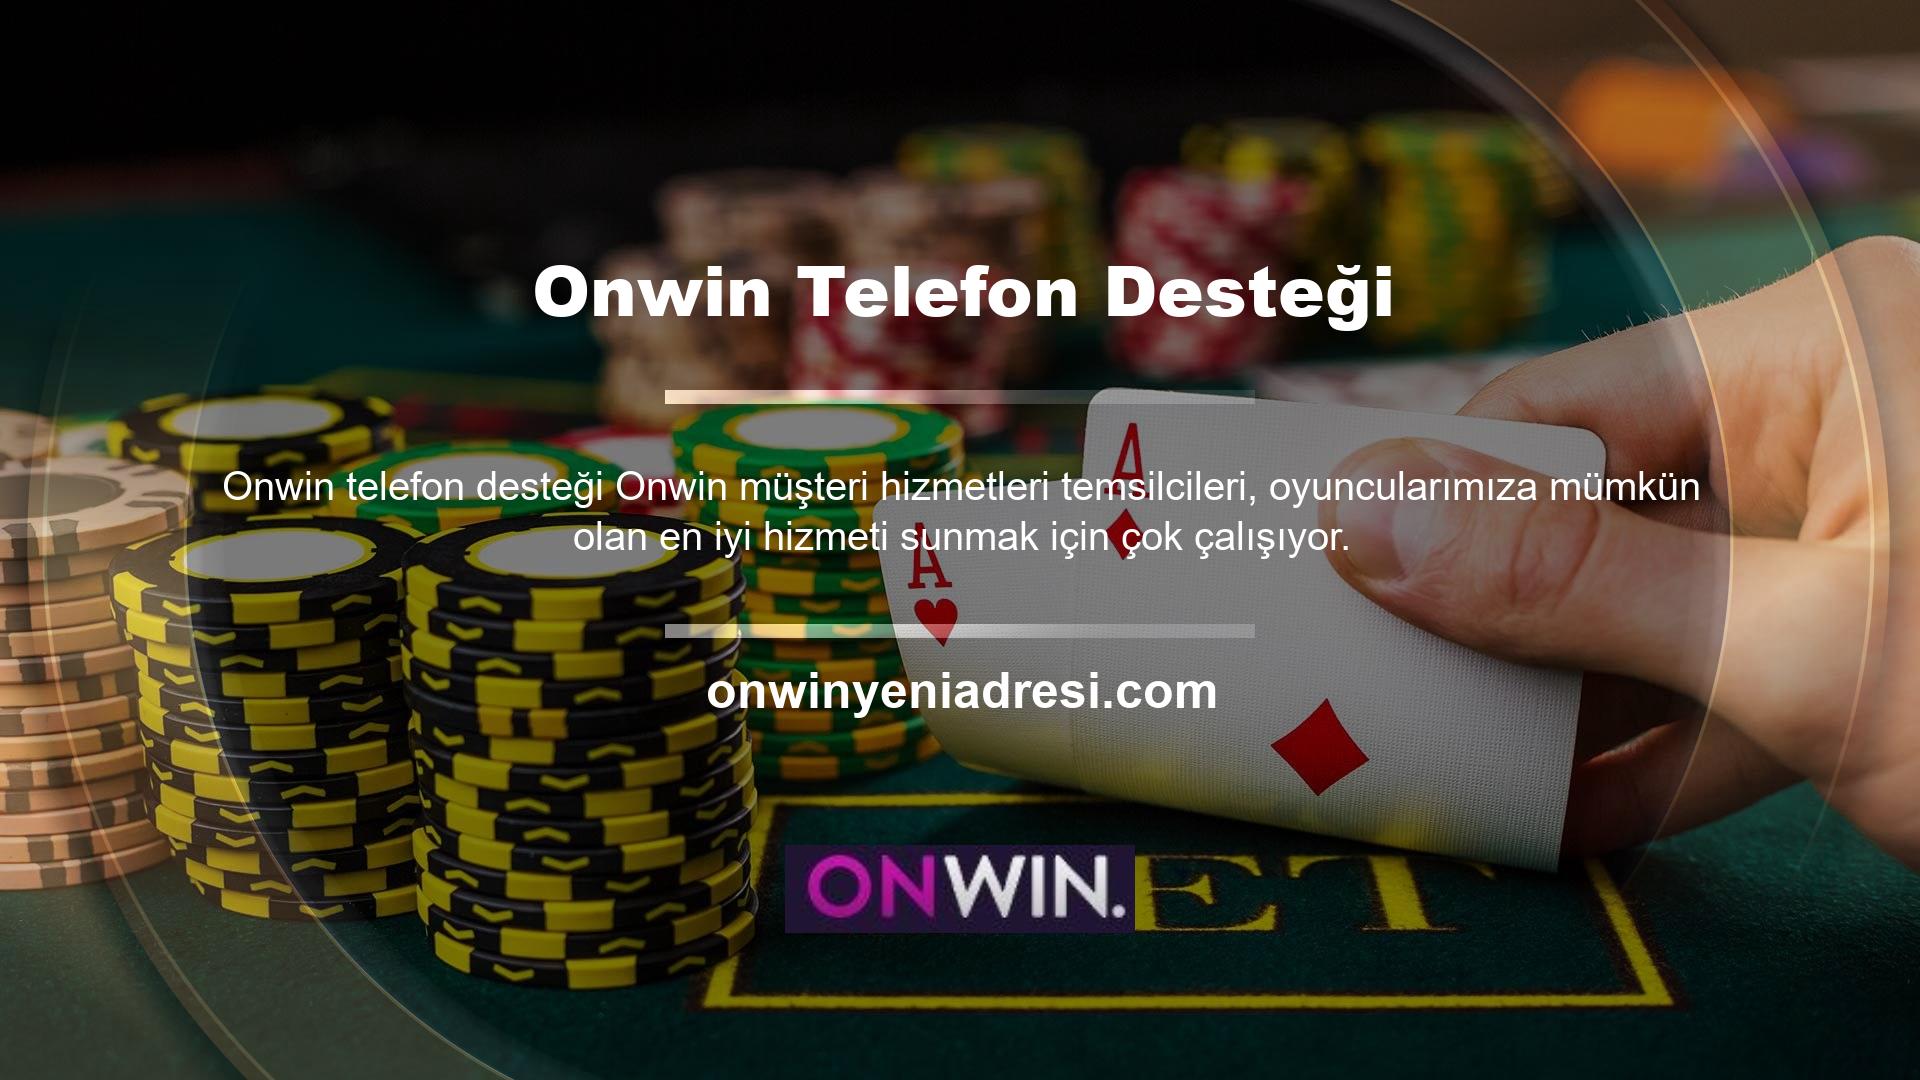 Onwin, konusunda derinlemesine eğitim almış deneyimli müşteri hizmetleri temsilcileri tarafından telefon numarası aracılığıyla ulaşılabilir